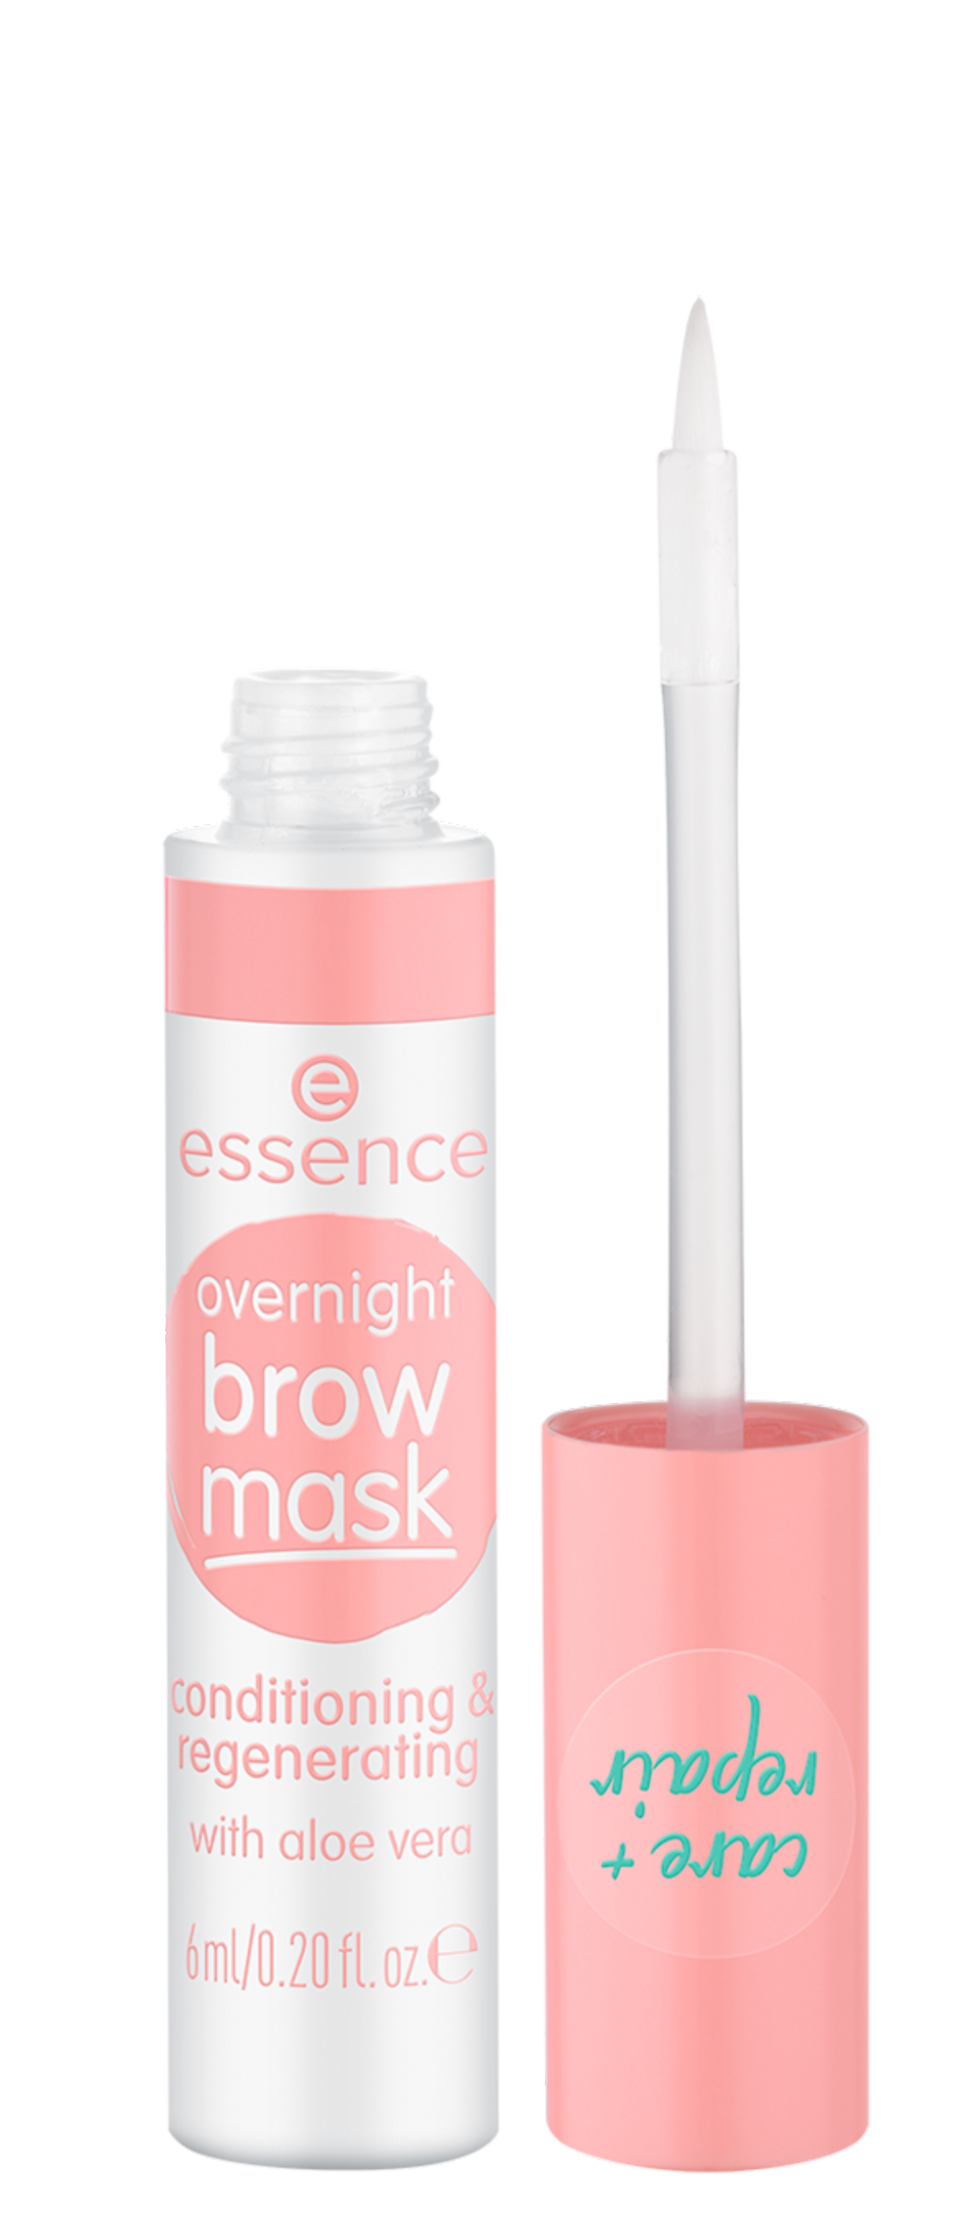 Im neuen Sortiment von essence gibt es jetzt die overnight brow mask. Sie bietet eine Extraportion Pflege für unsere Augenbrauen mit Aloe Vera, Panthenol und Rizinusöl. So sind auch die Brauen richtig schön gepflegt. Für etwa 3 Euro erhältlich.